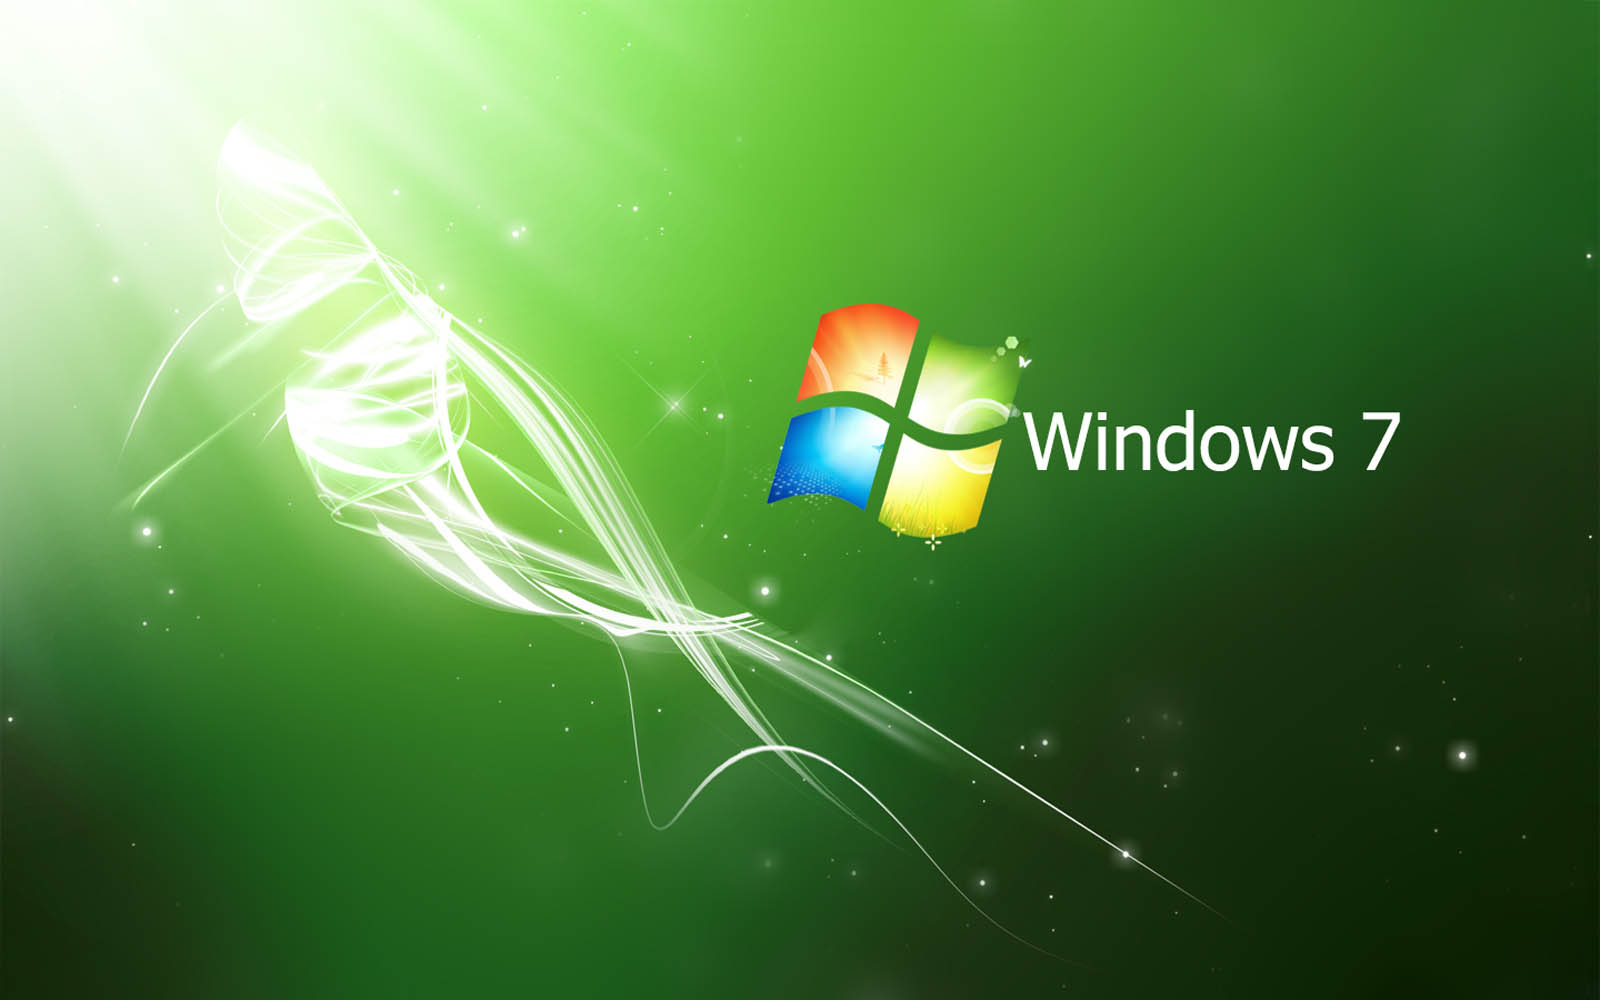 Tải miễn phí Hình nền Windows 7 màu xanh lá cây Art and Home Wallpaper HD để trang trí cho desktop của bạn. Với màu sắc rực rỡ và hình ảnh rõ nét, hình nền này sẽ mang lại cho bạn một không gian làm việc và giải trí đầy sự tươi mới và sinh động.